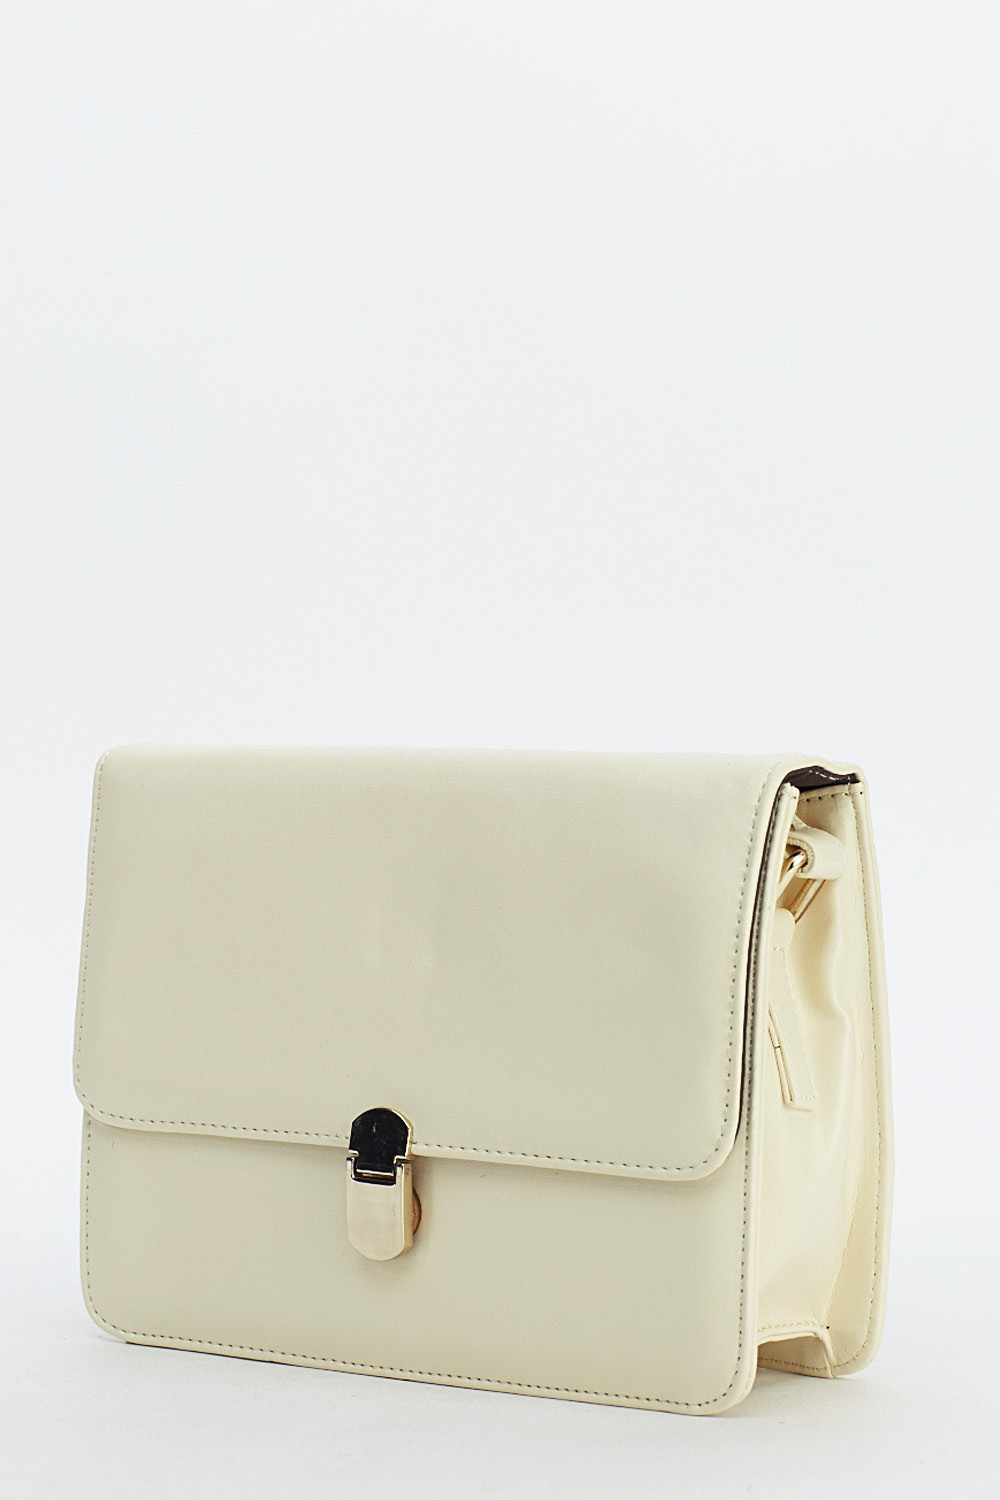 Cream Box Shoulder Bag - Just $7